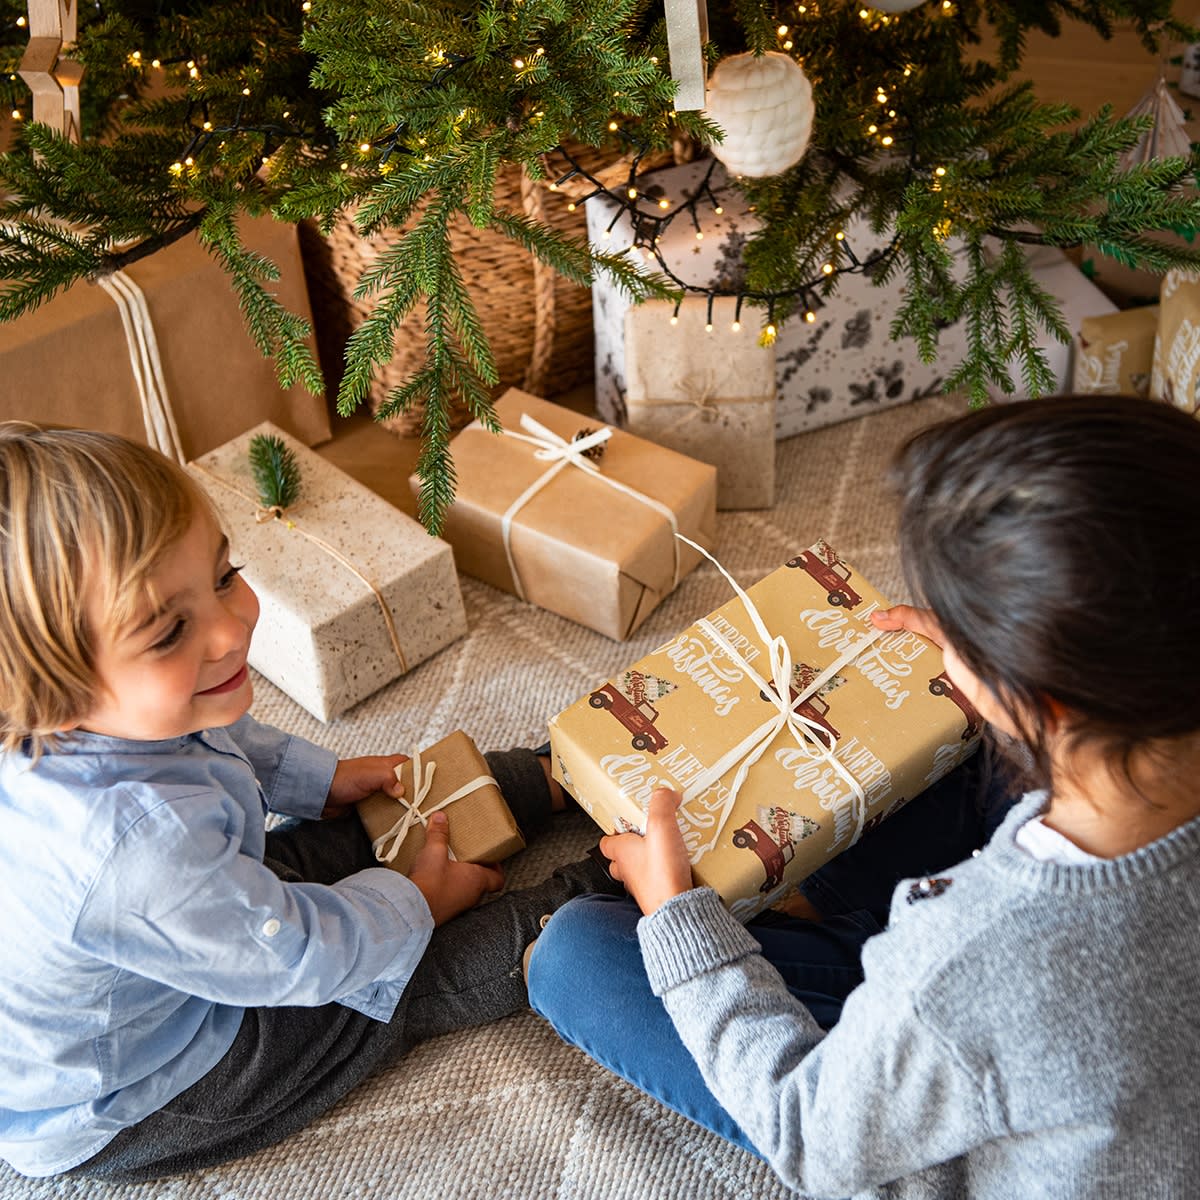 Des idées de cadeaux pour faire plaisir aux enfants à Noël